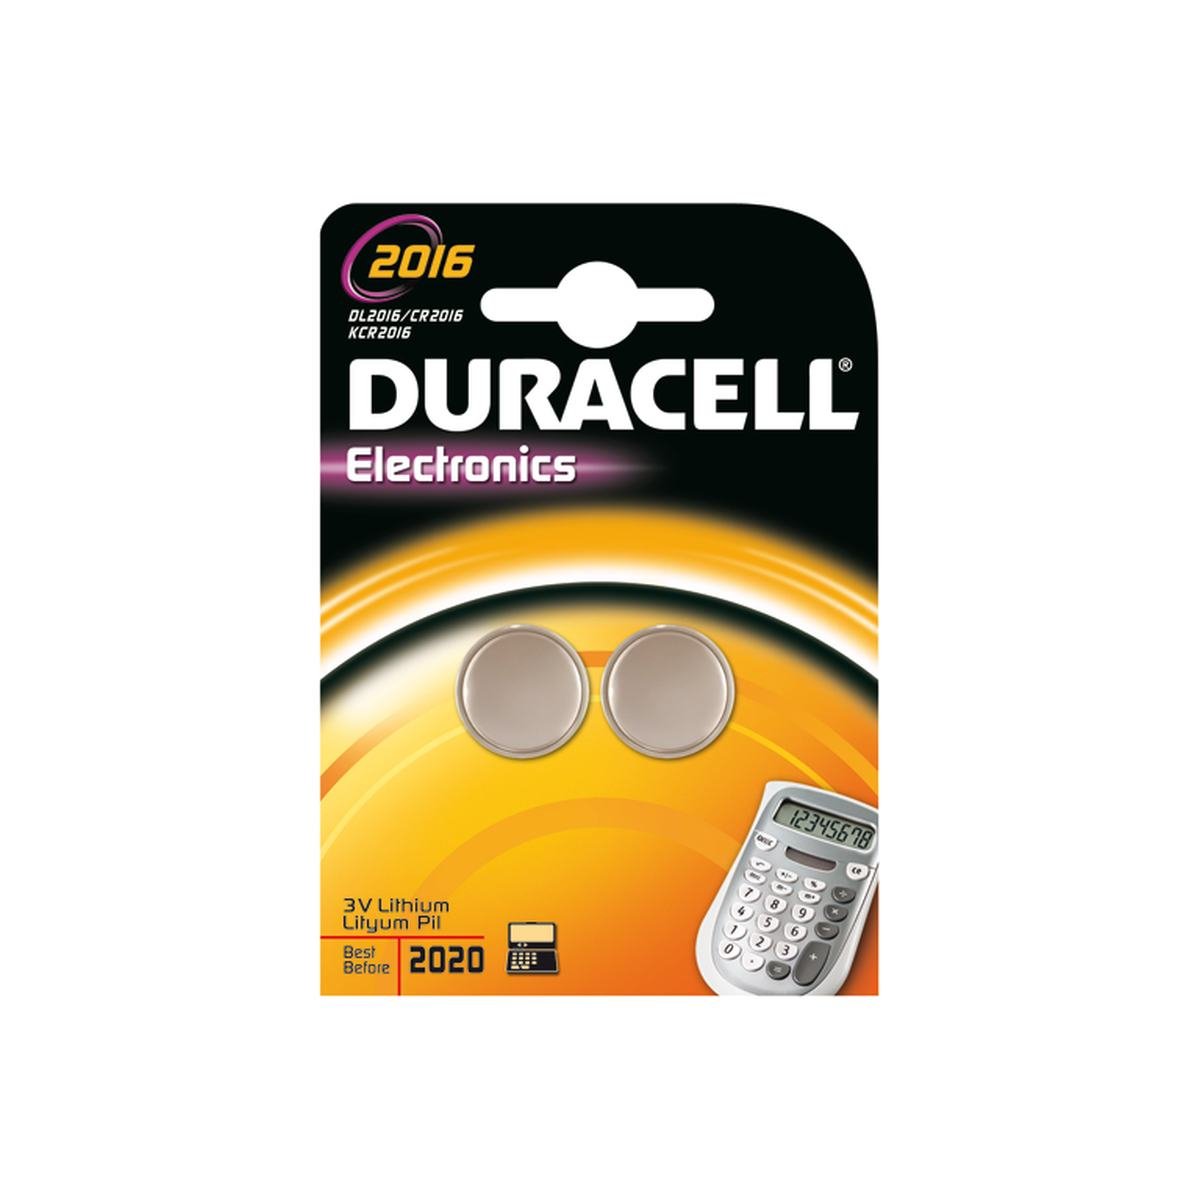 Knappcell batteri cr2016 3v 2 st. Paket - Duracell